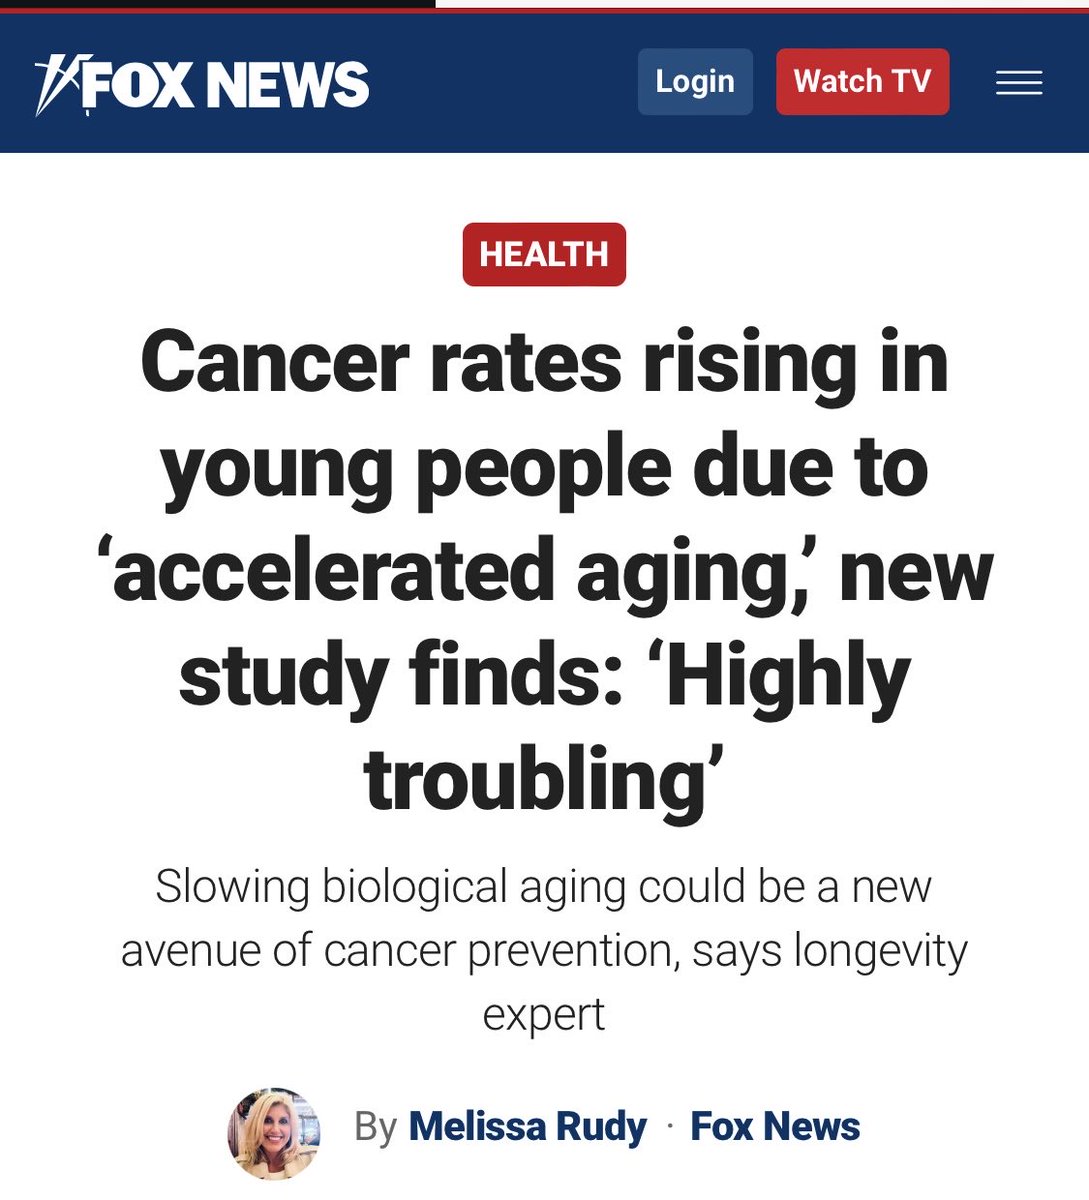 FOX Haber Yeni araştırma sonucu : “Hızlanan yaşlanmaya” bağlı olarak gençlerde kanser oranları artıyor” “Hızlanan yaşlanmış gençlerin” yüzde kaçı covid s$ılı acaba ??